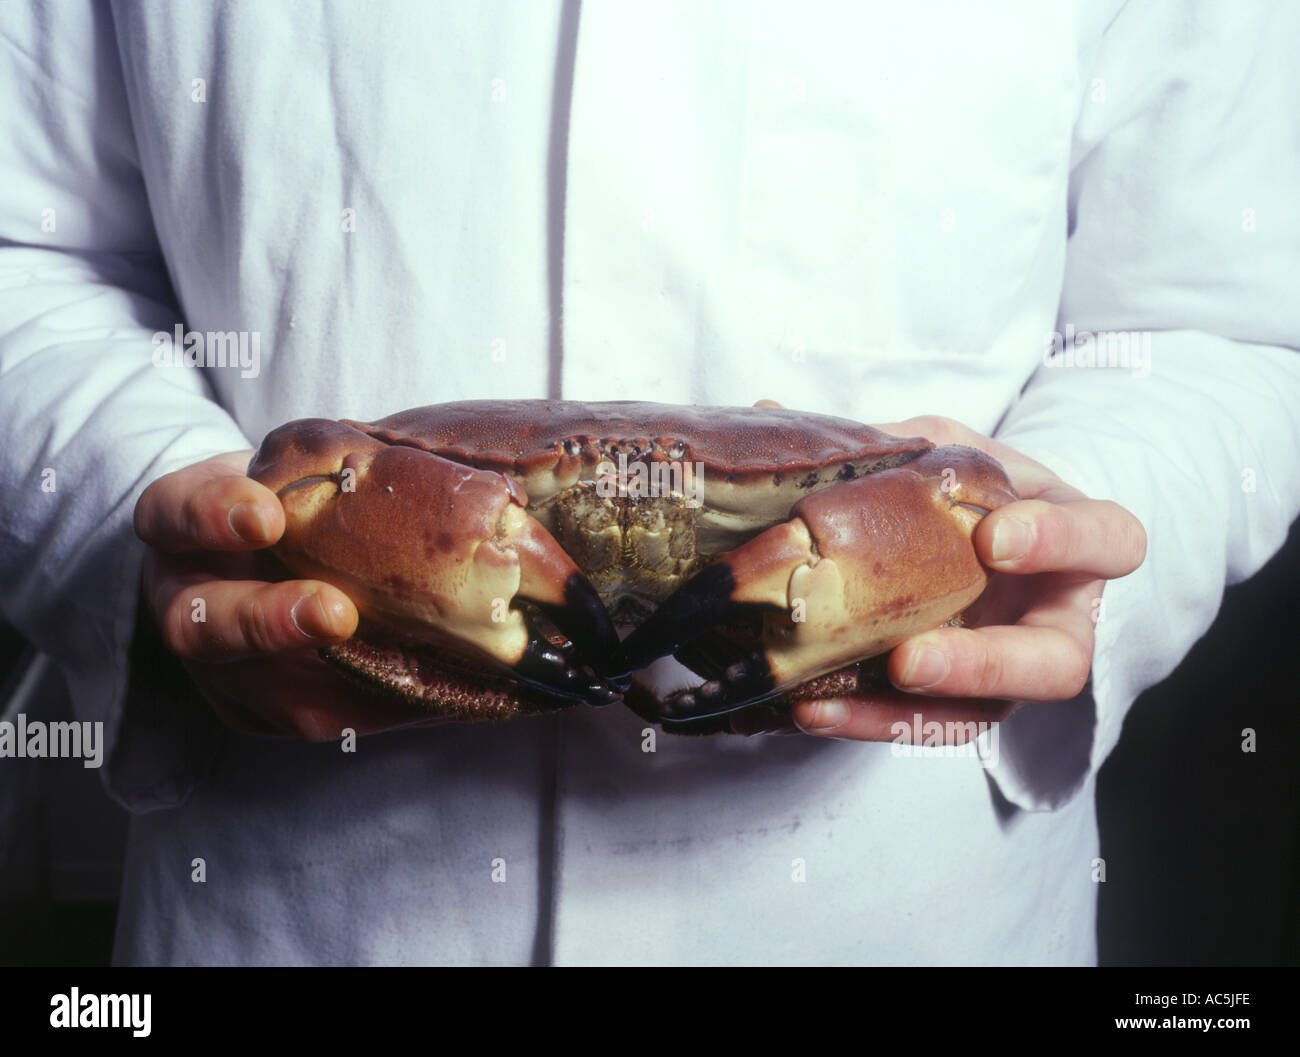 dh STROMNESS ORKNEY ganze Krabben lokale Lebensmittelindustrie frische Produktion schottische Schalentiere Krabben aus der Nähe von schottland Stockfoto